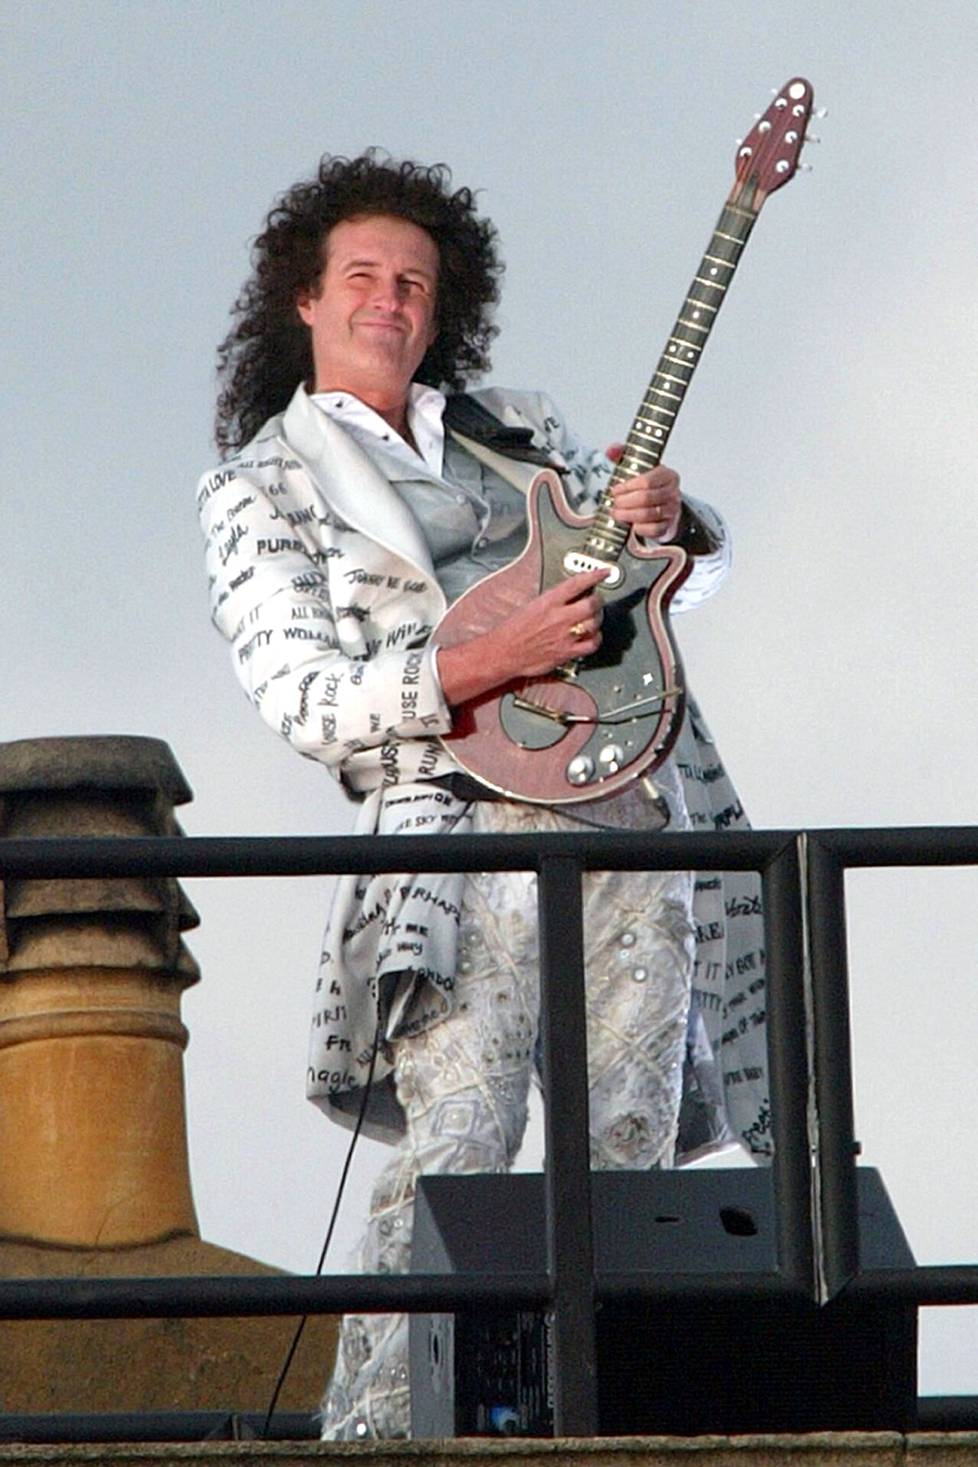 Juhlat käynnisti Queen-yhtyeen kitaristi Brian May, joka soitti God Save the Queen -kansallishymnin palatsin katolta.